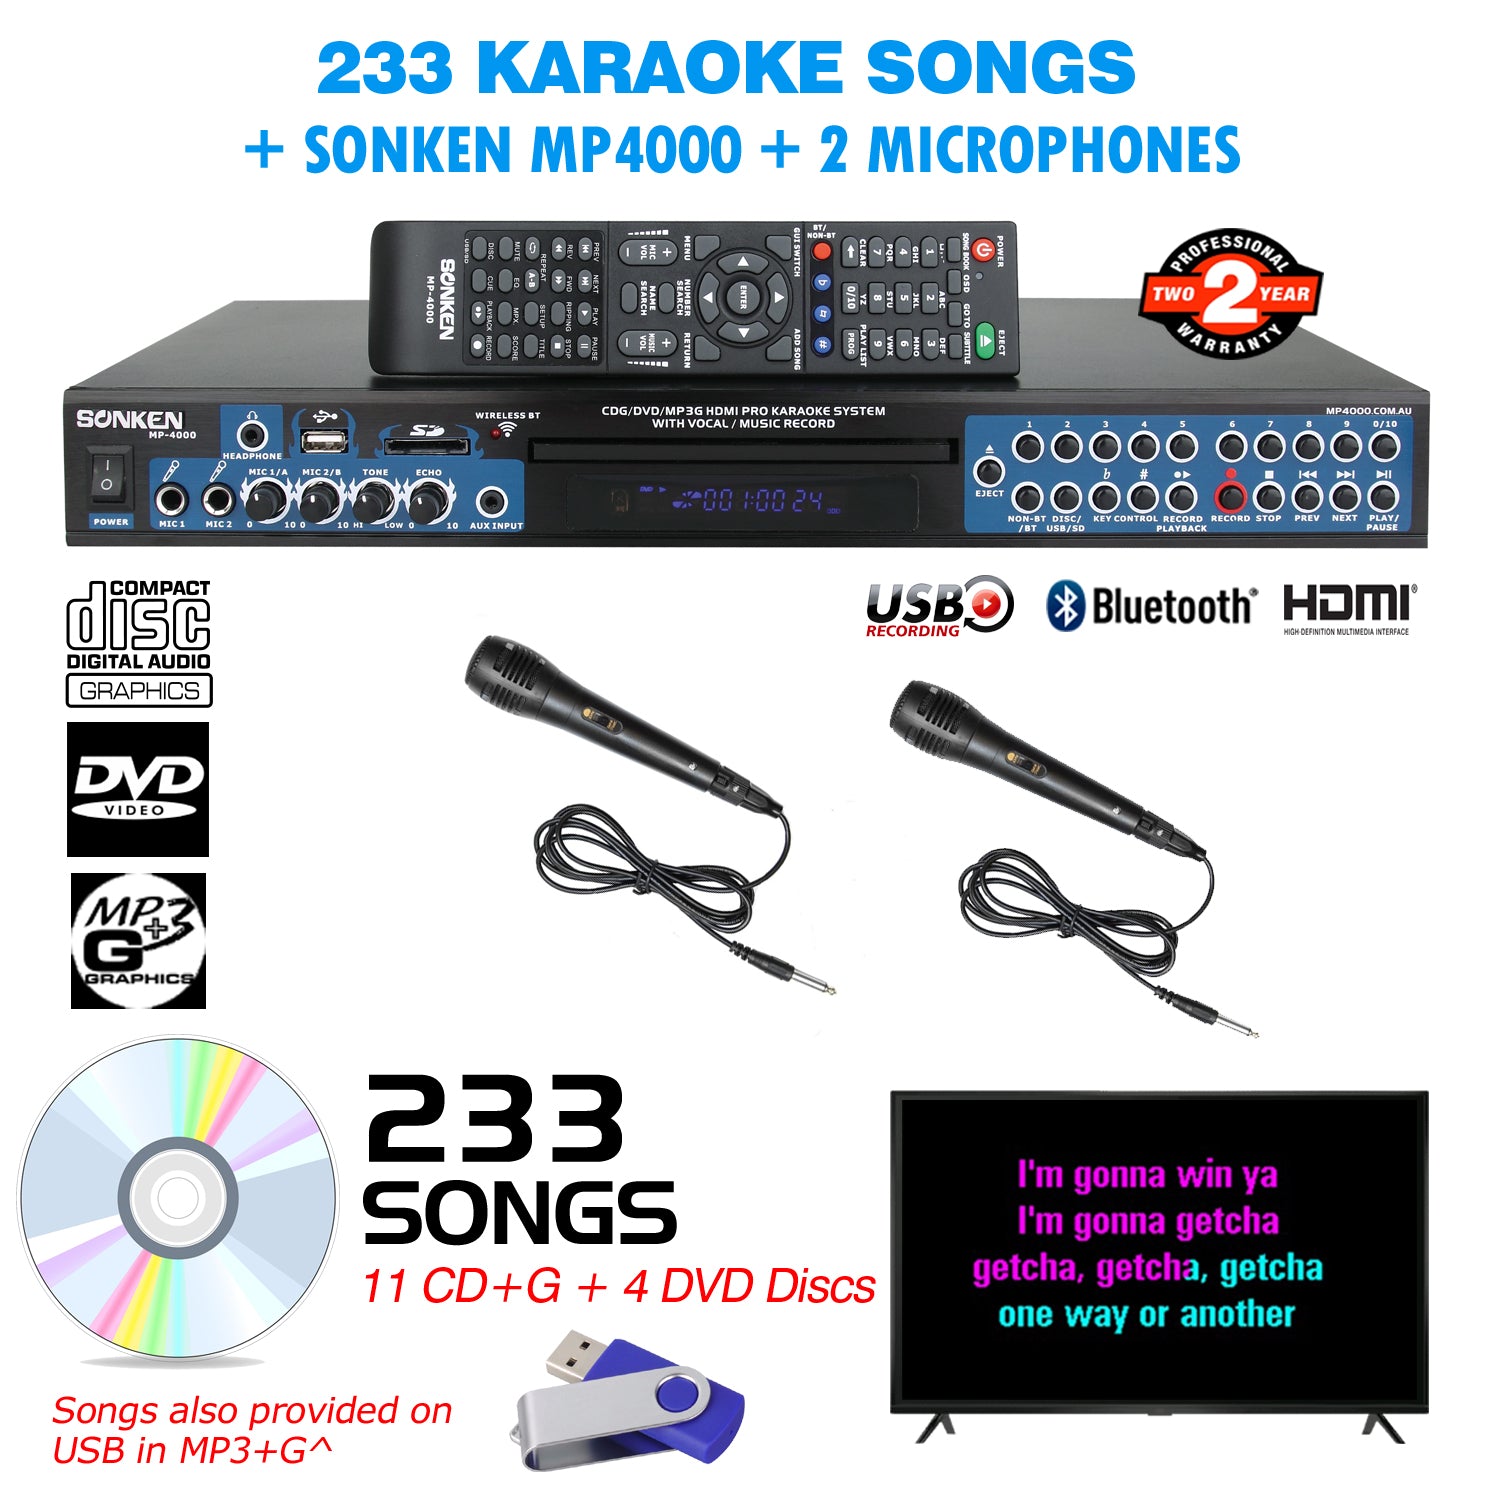 Sonken MP4000 Pro Karaoke Machine + 233 Songs + 2 Wired Microphones